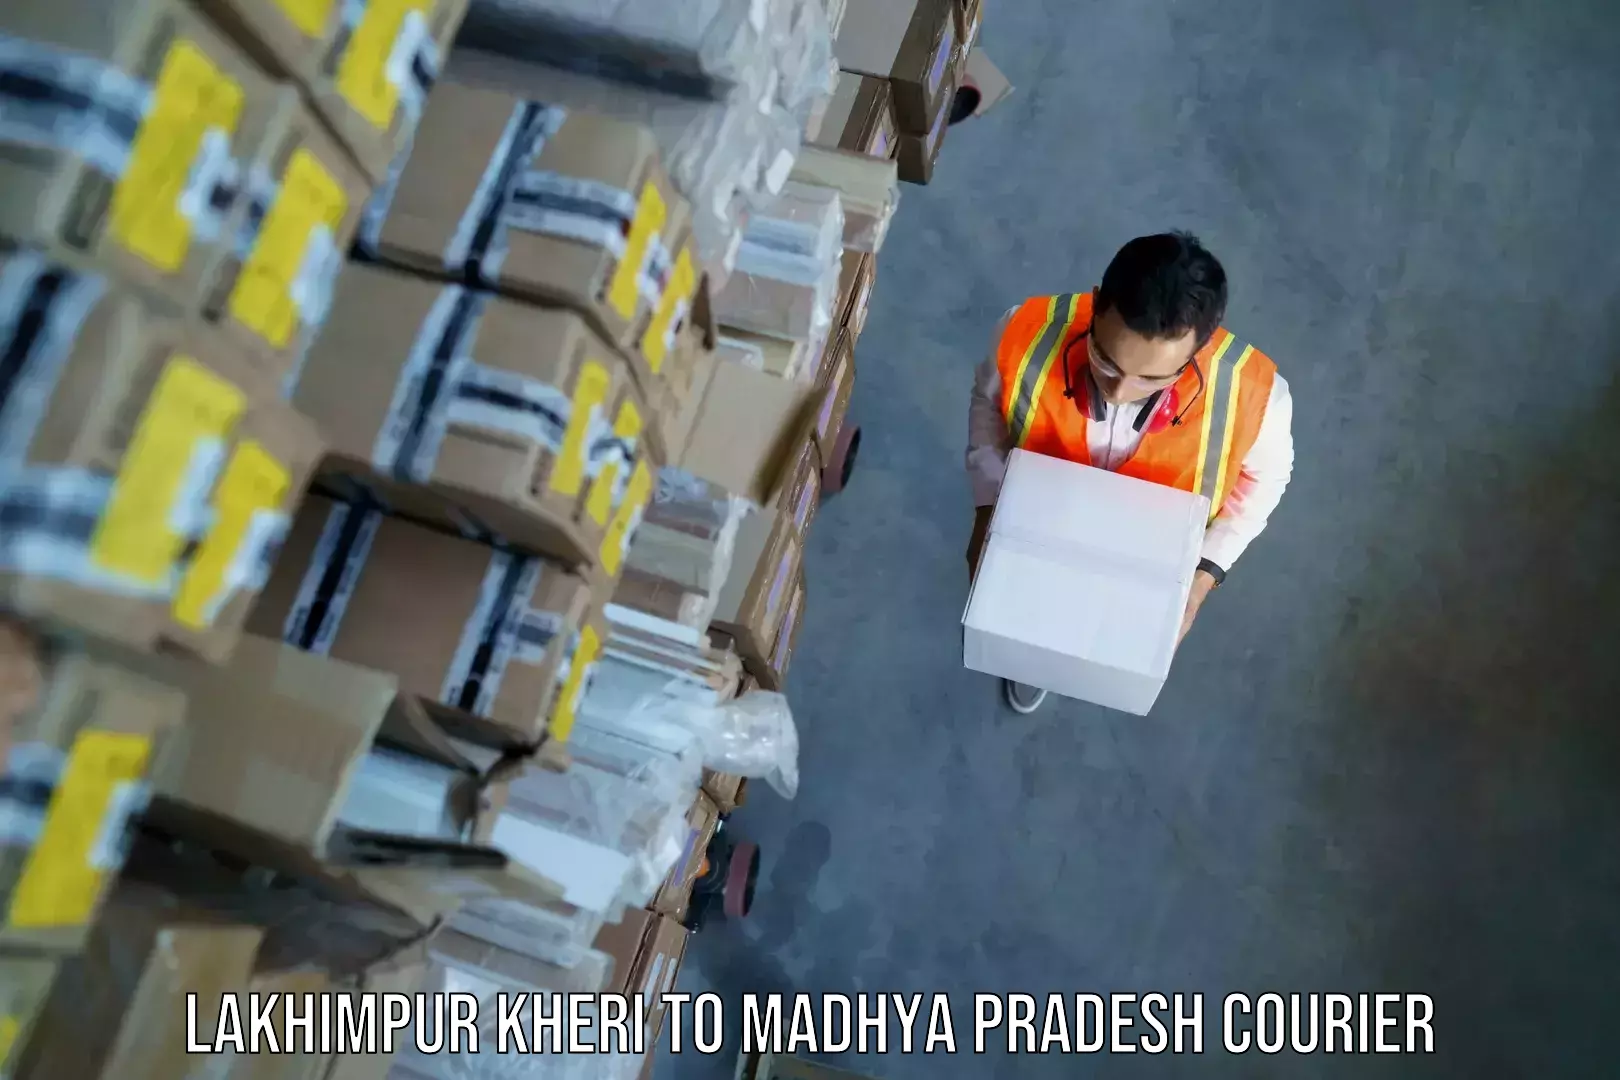 Baggage shipping experts Lakhimpur Kheri to Mandsaur